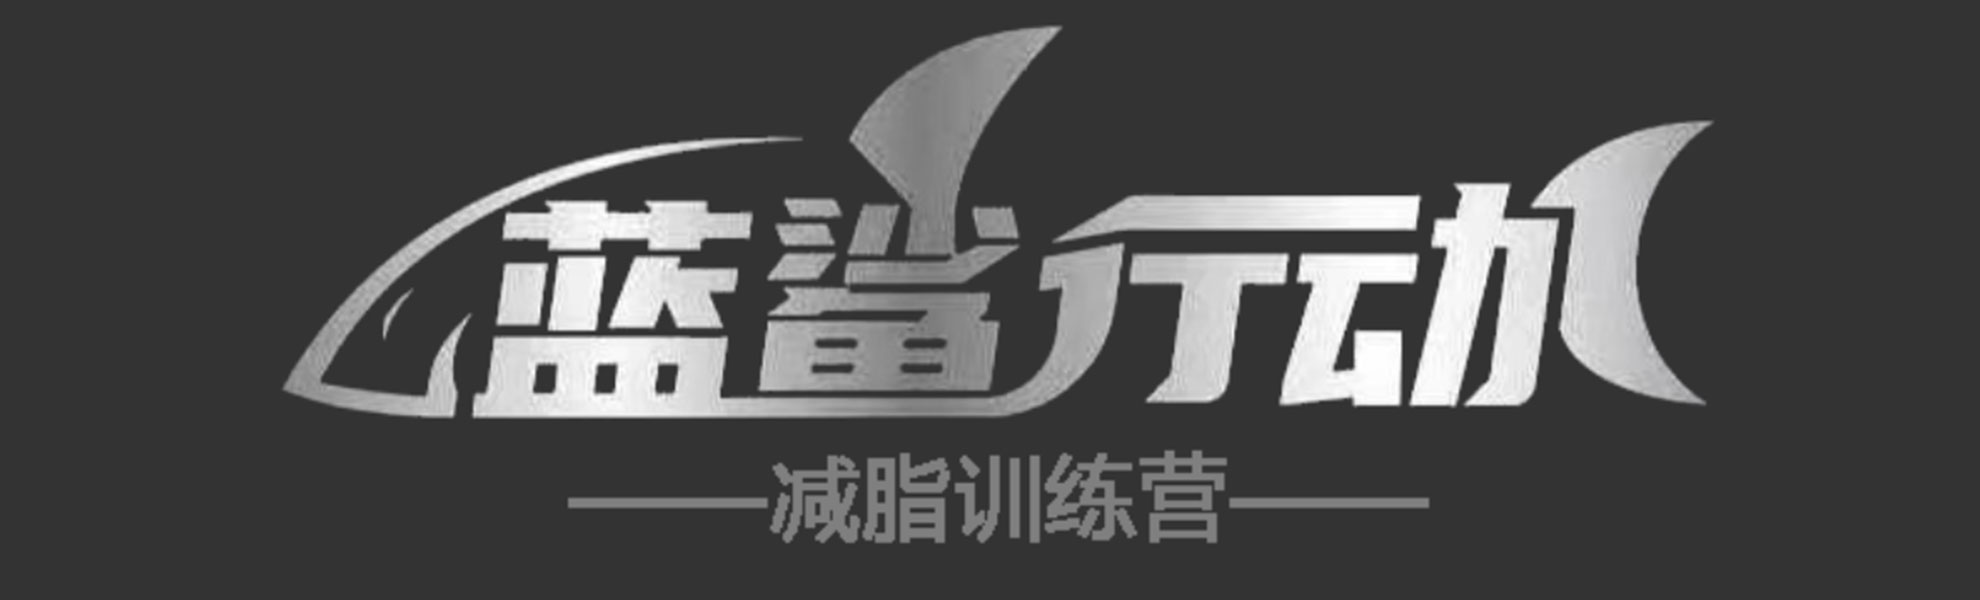 沈阳蓝鲨行动体育发展有限公司